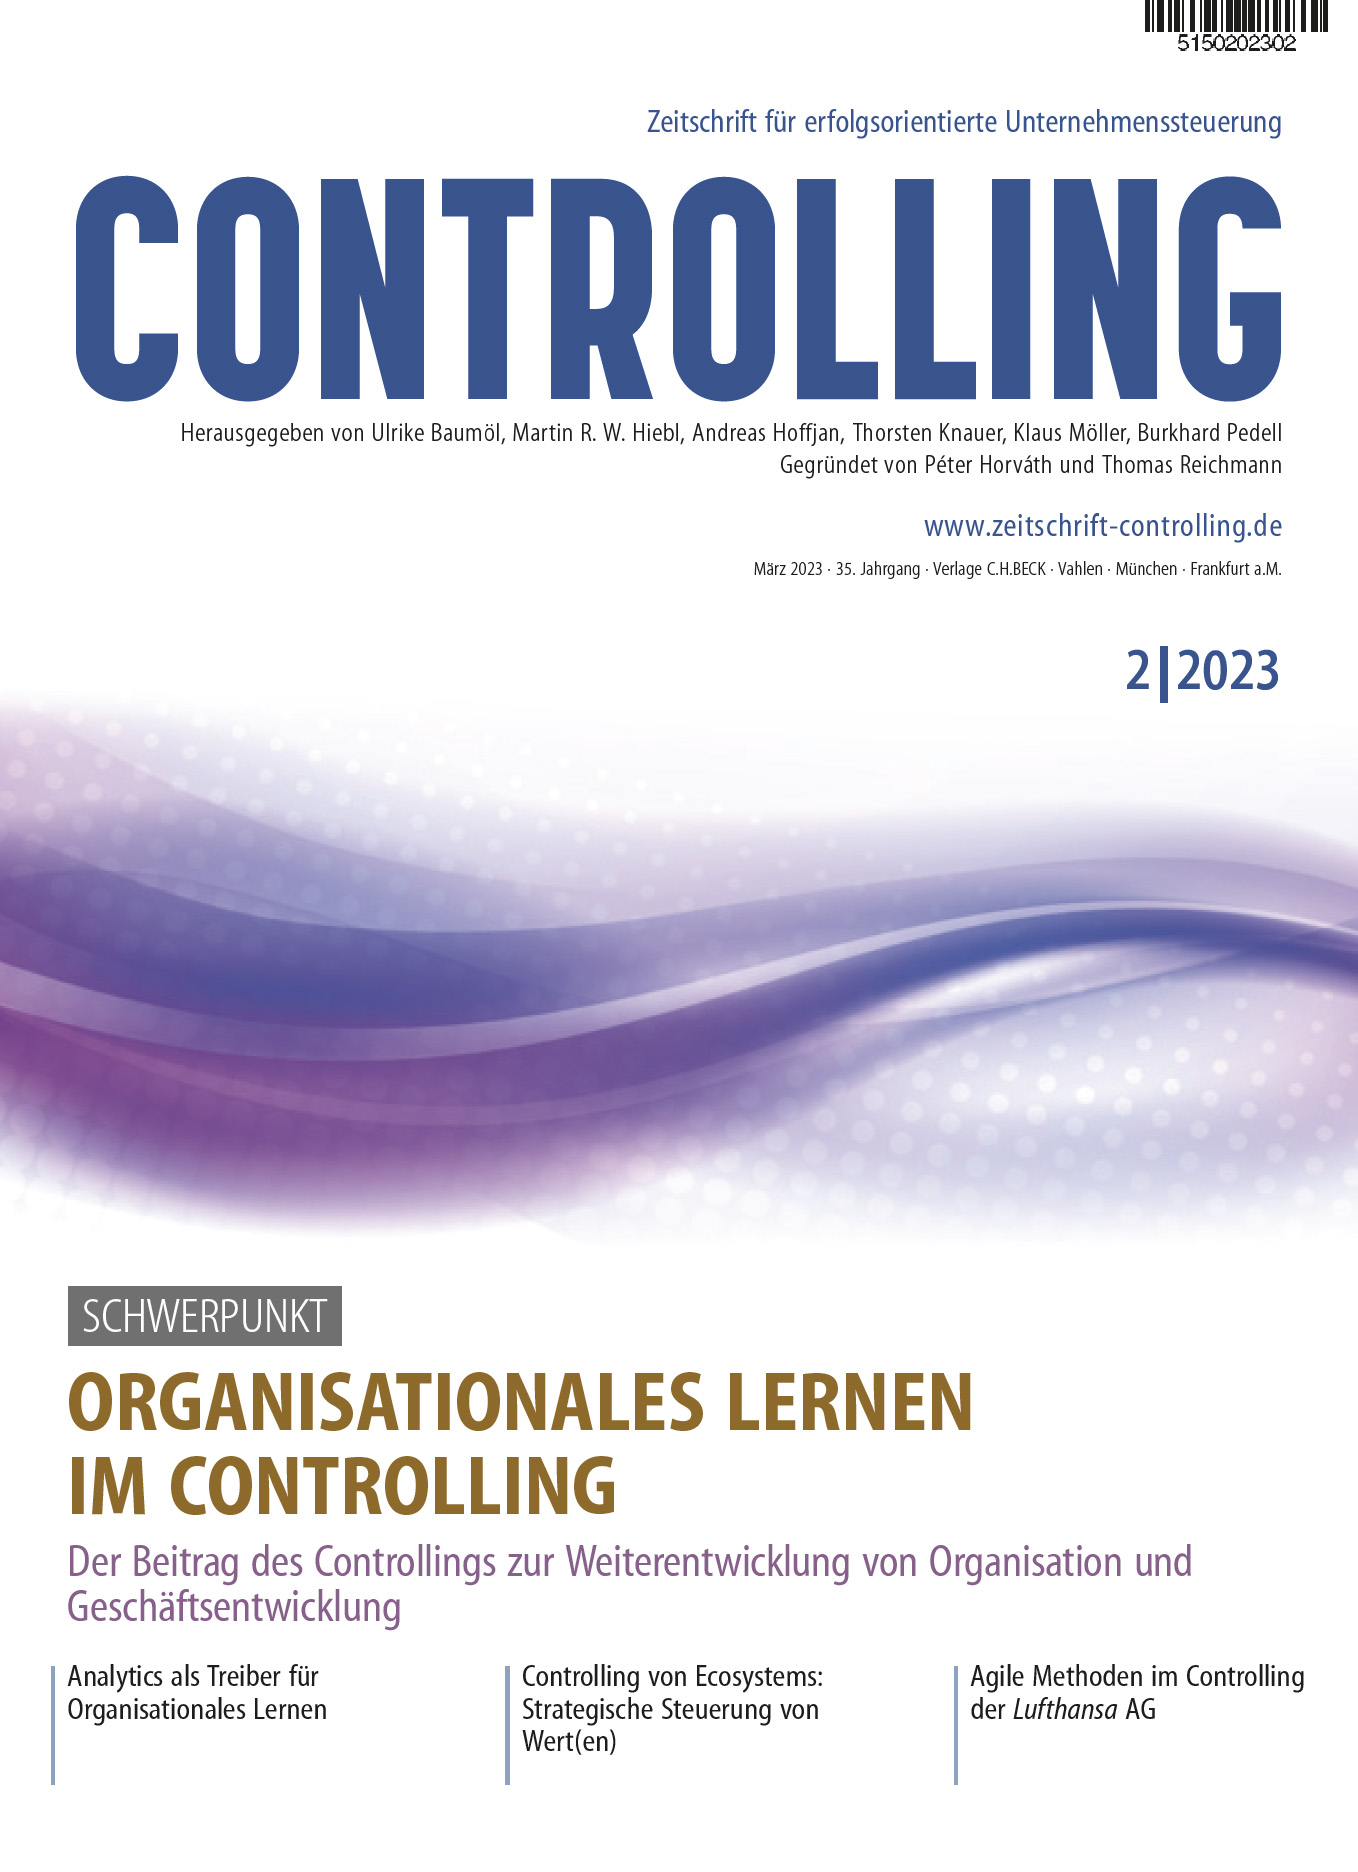 Organisationales Lernen im Controlling_Umschlag